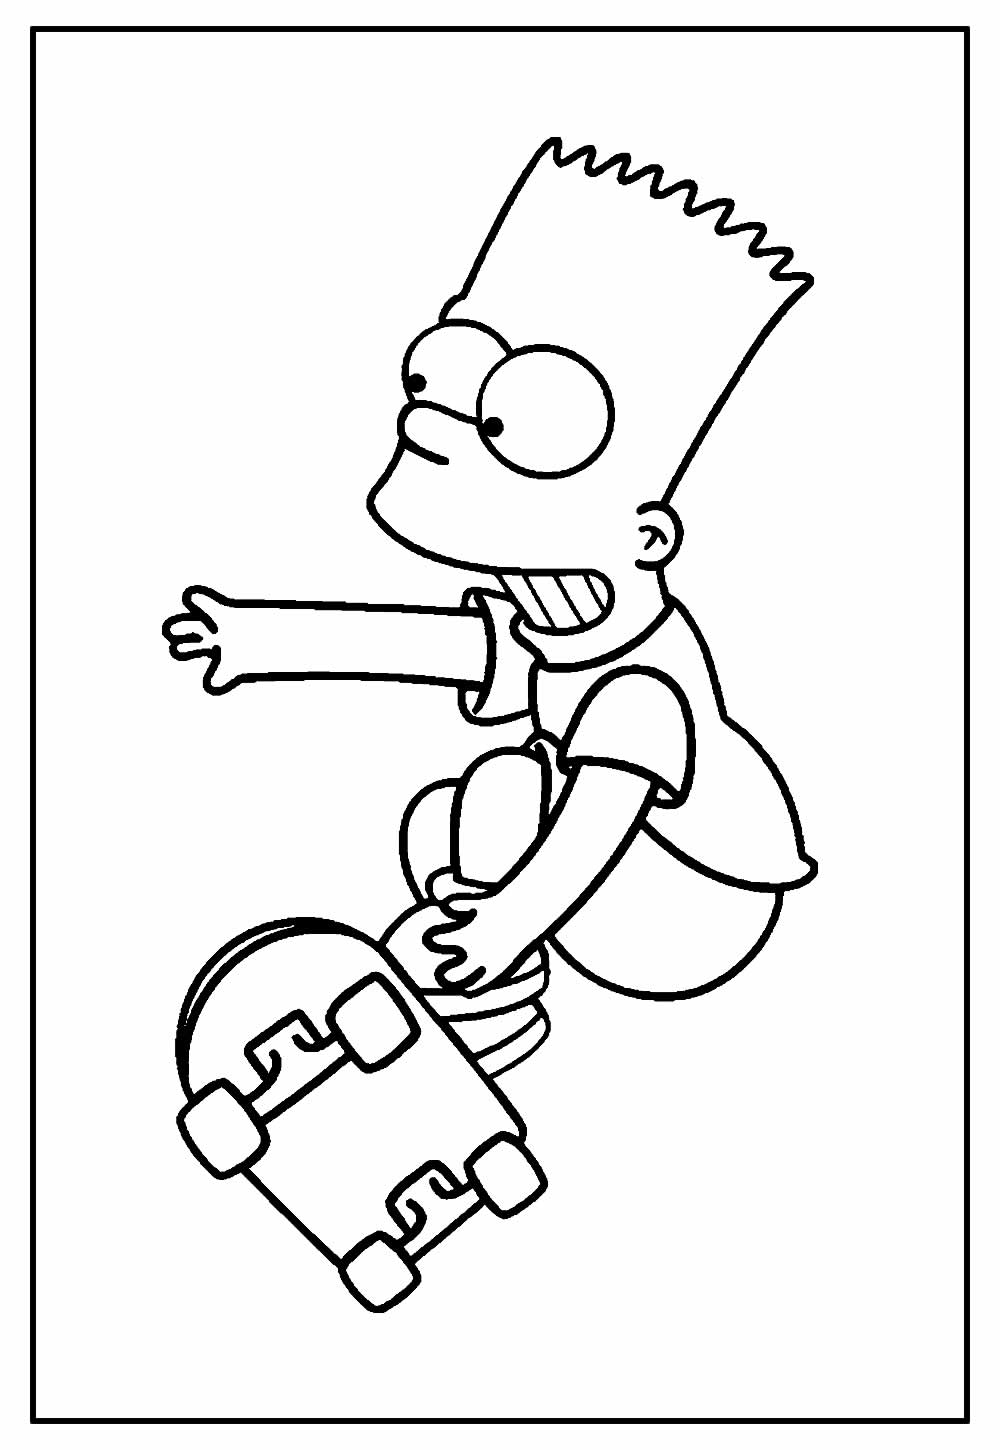 Desenho de Skate para colorir - Bart Simpson